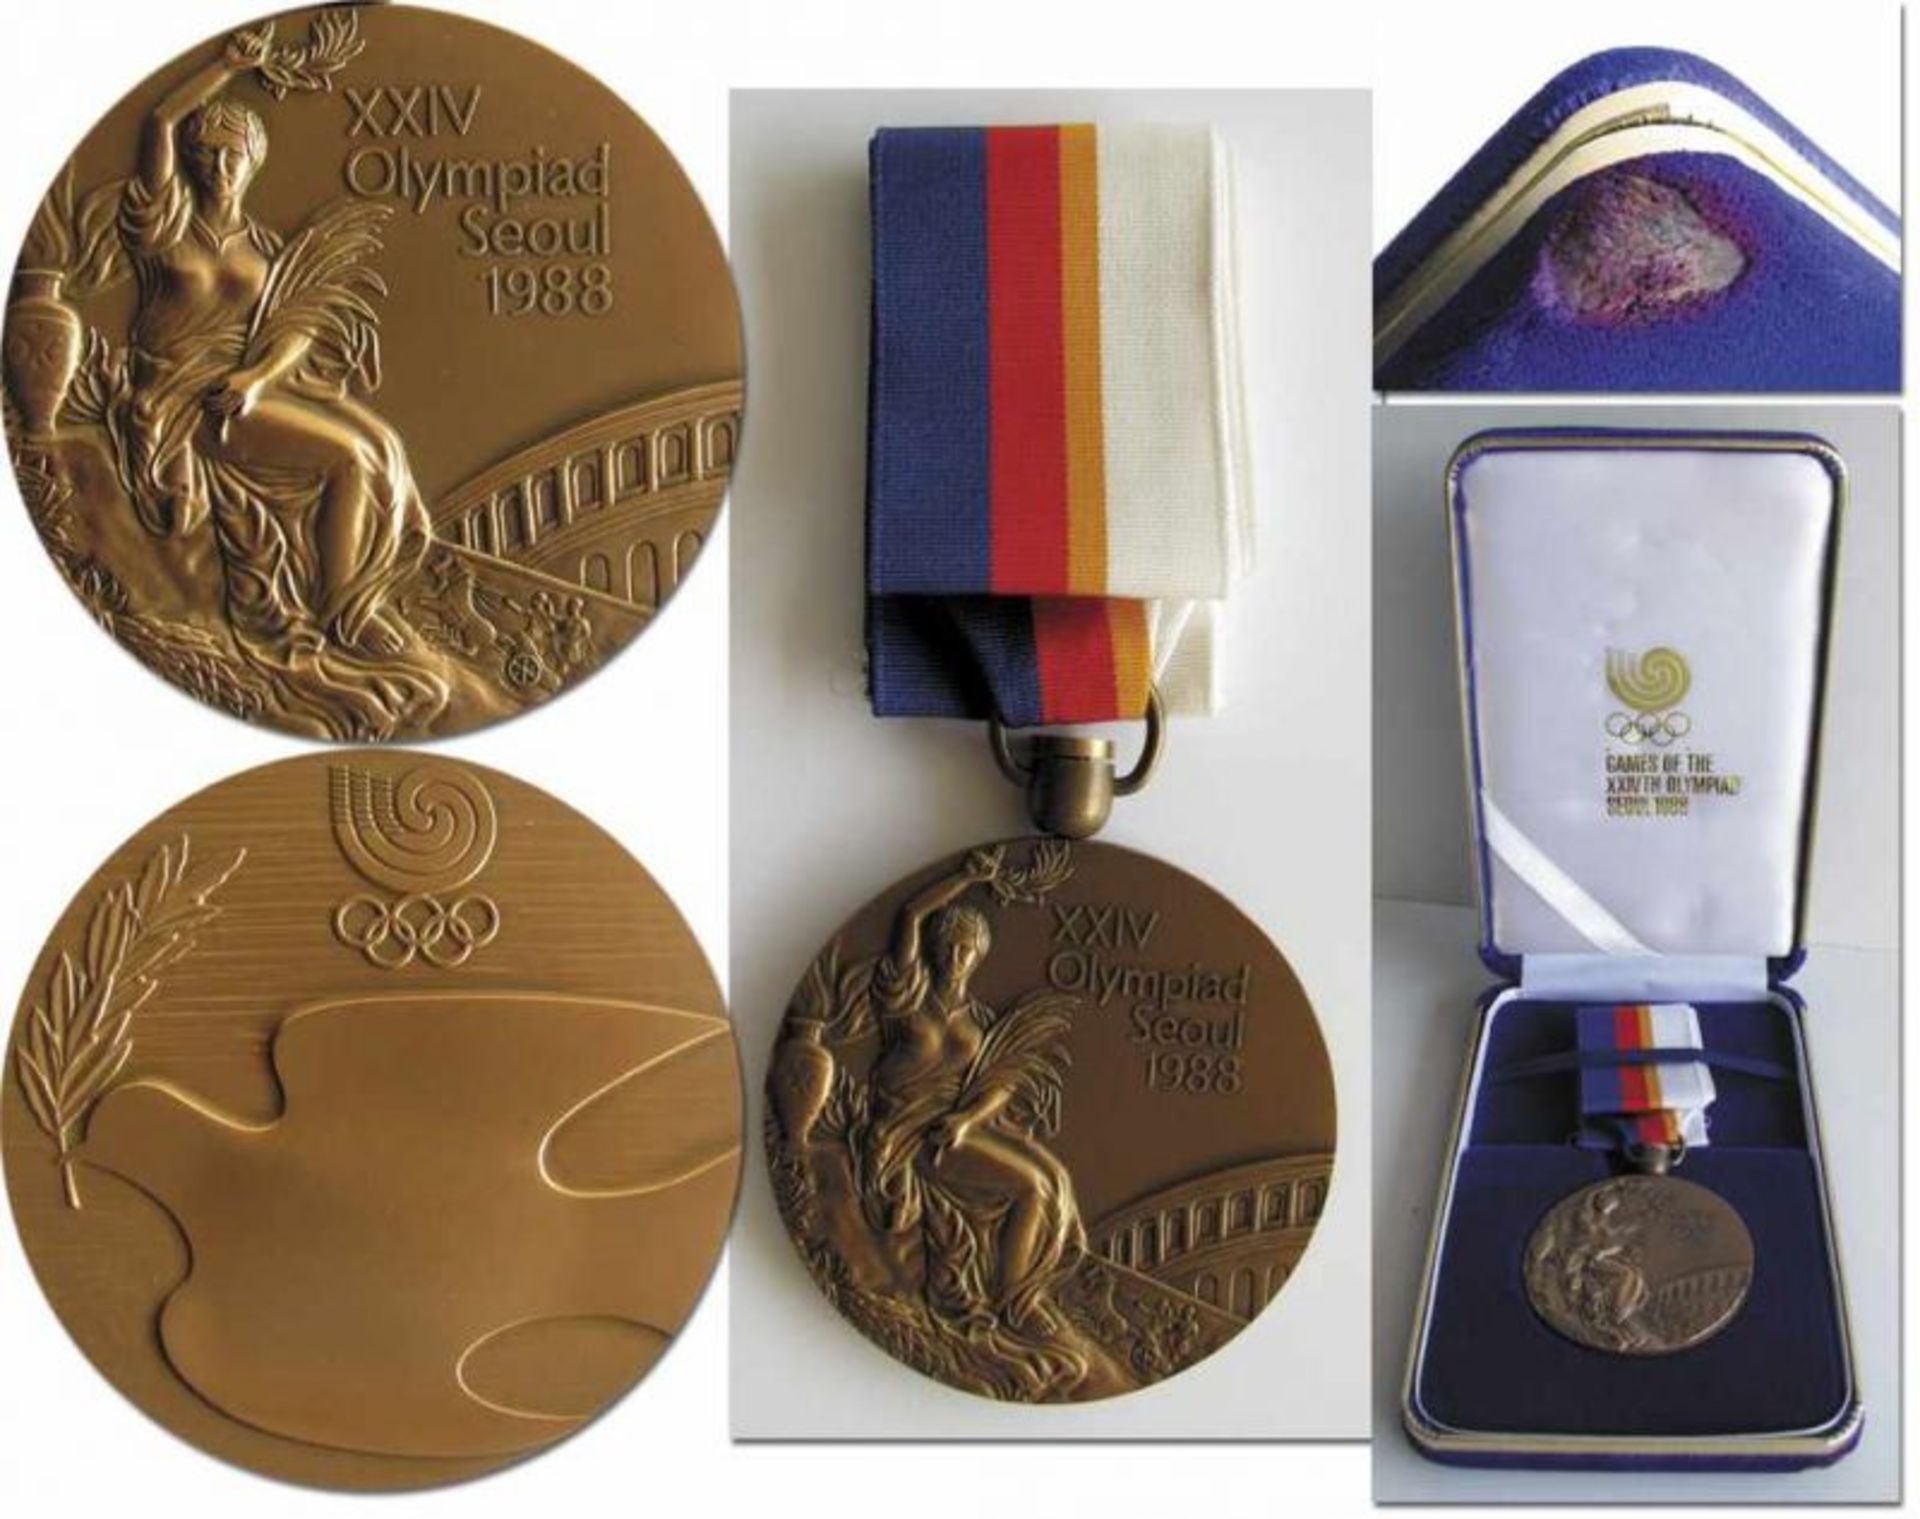 Olympic Games Seoul 1988. Bronze Winner medal - Original bronze medal from the Olympic Games in